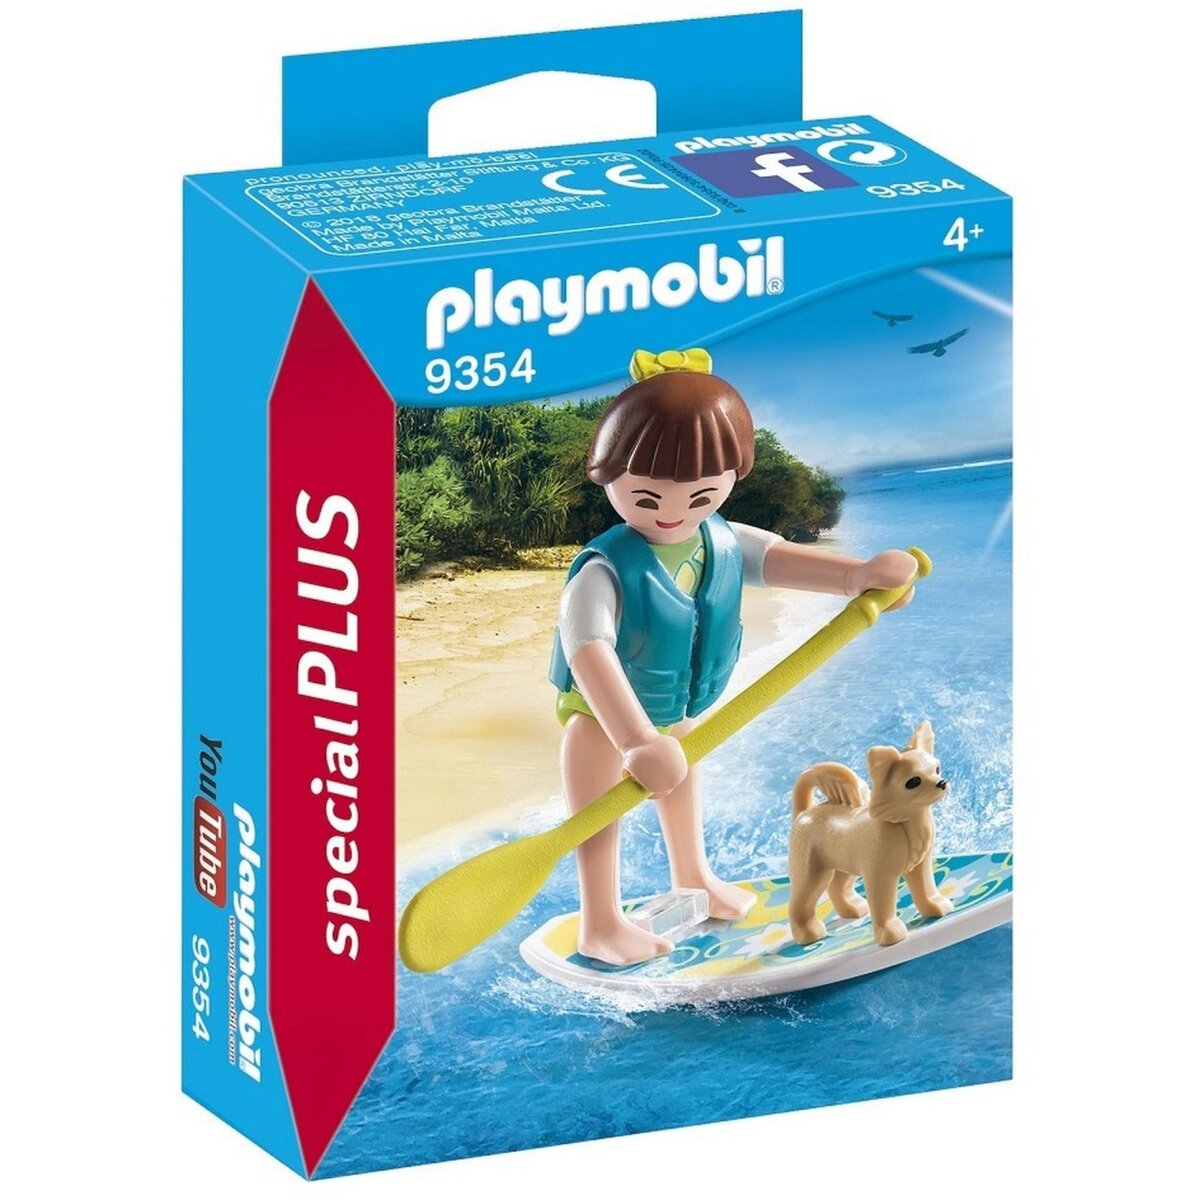 PLAYMOBIL 9354 - Spécial Plus - Sportive avec paddle